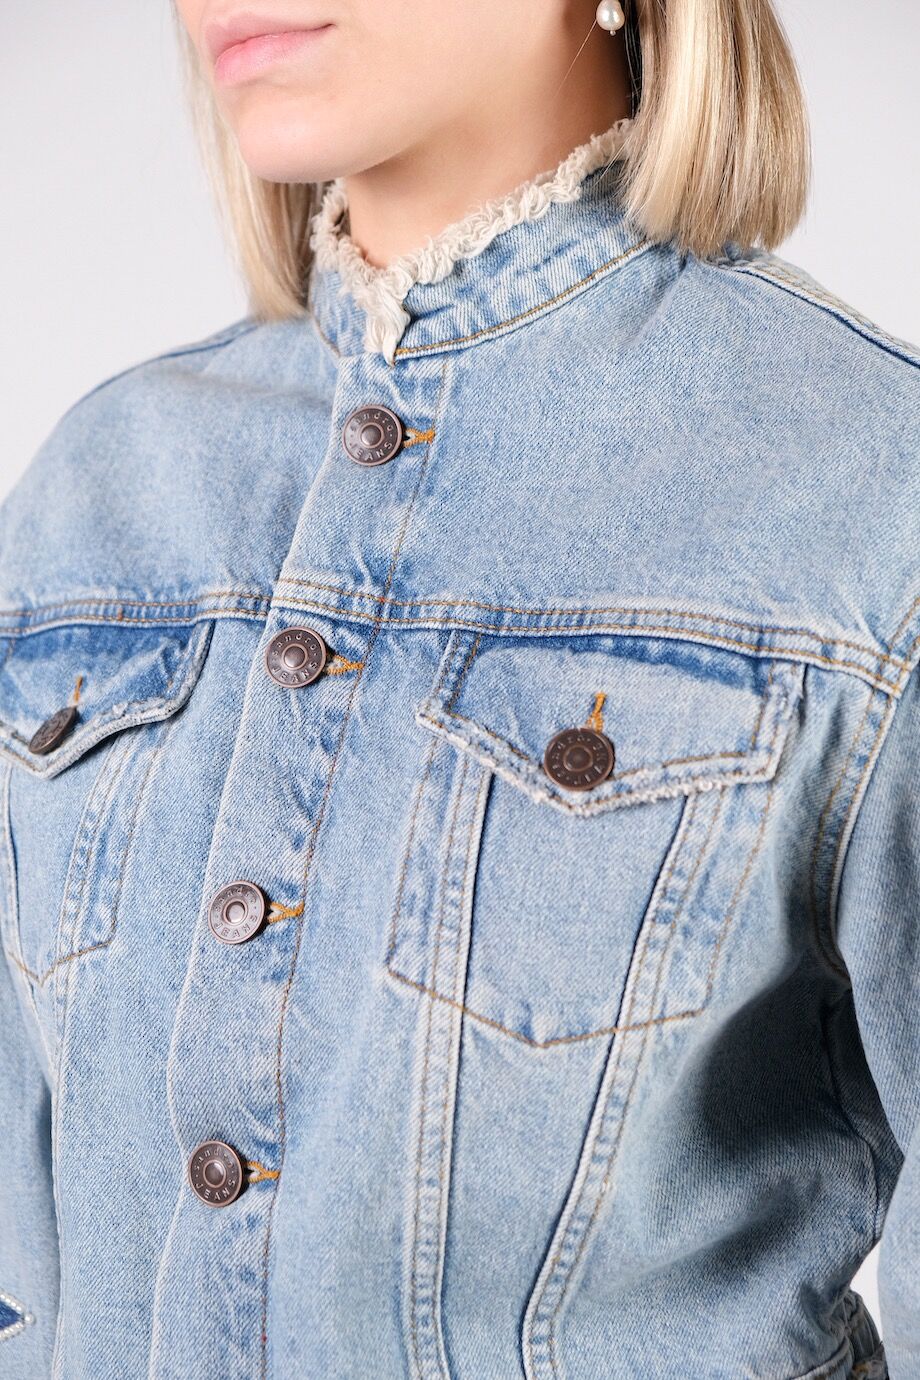 image 4 Джинсовая куртка голубого цвета со звездами на рукавах